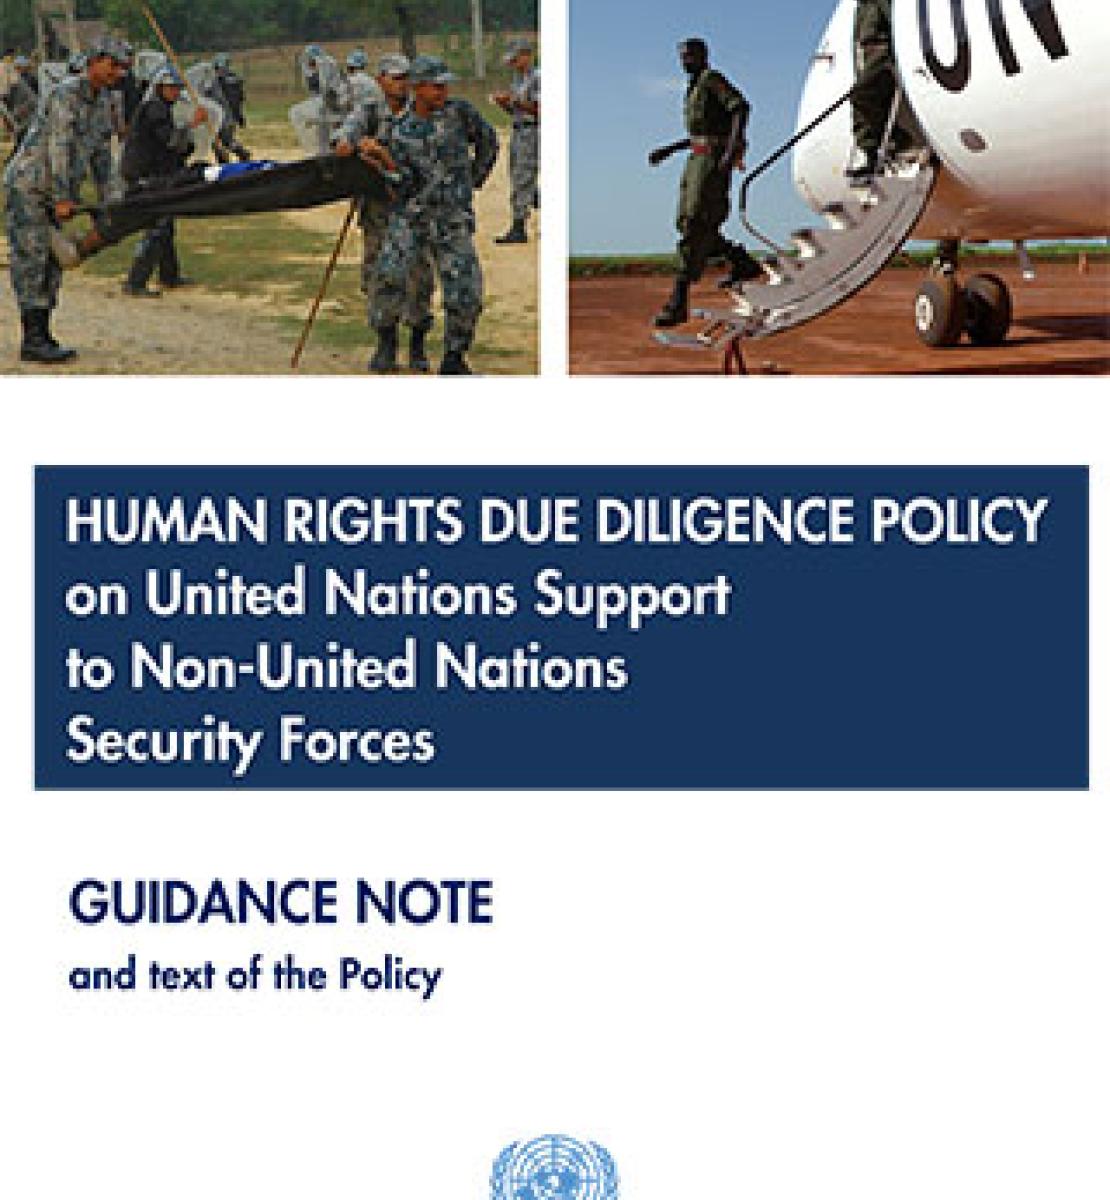 Note d'orientation sur la politique de diligence voulue en matière de droits de l’homme en cas d'appui de l'ONU à des forces de sécurité non onusiennes